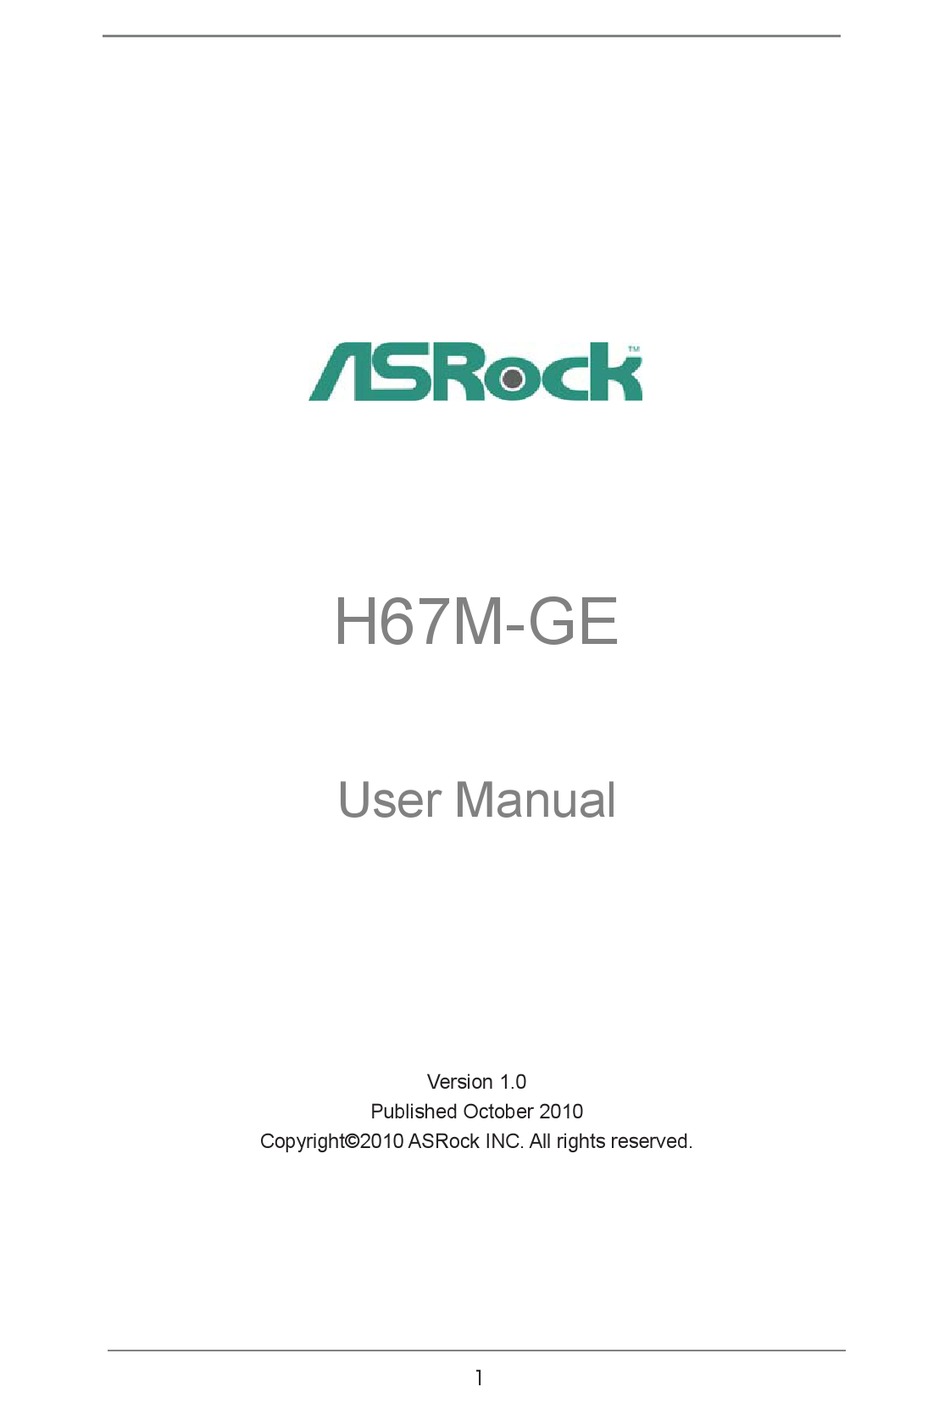 ASROCK H67M-GE USER MANUAL Pdf Download | ManualsLib